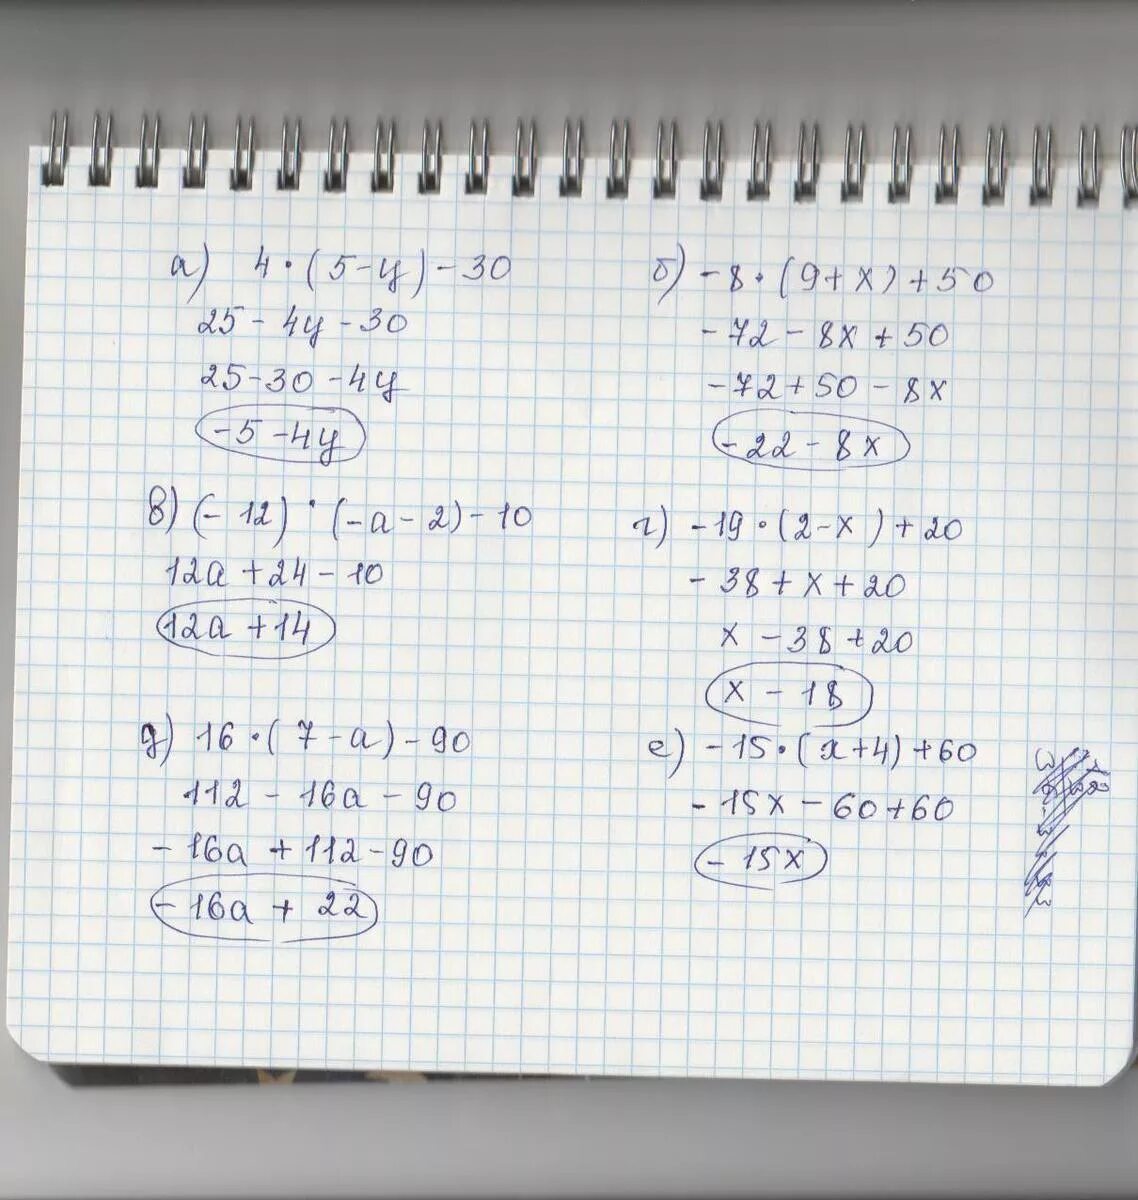 1 2 9 50 решение. 20-3(Х-5)<16-7х. 5/4-Х+5/Х=10/5. Решение 5х+12=60. 4нвк 60-12-19.